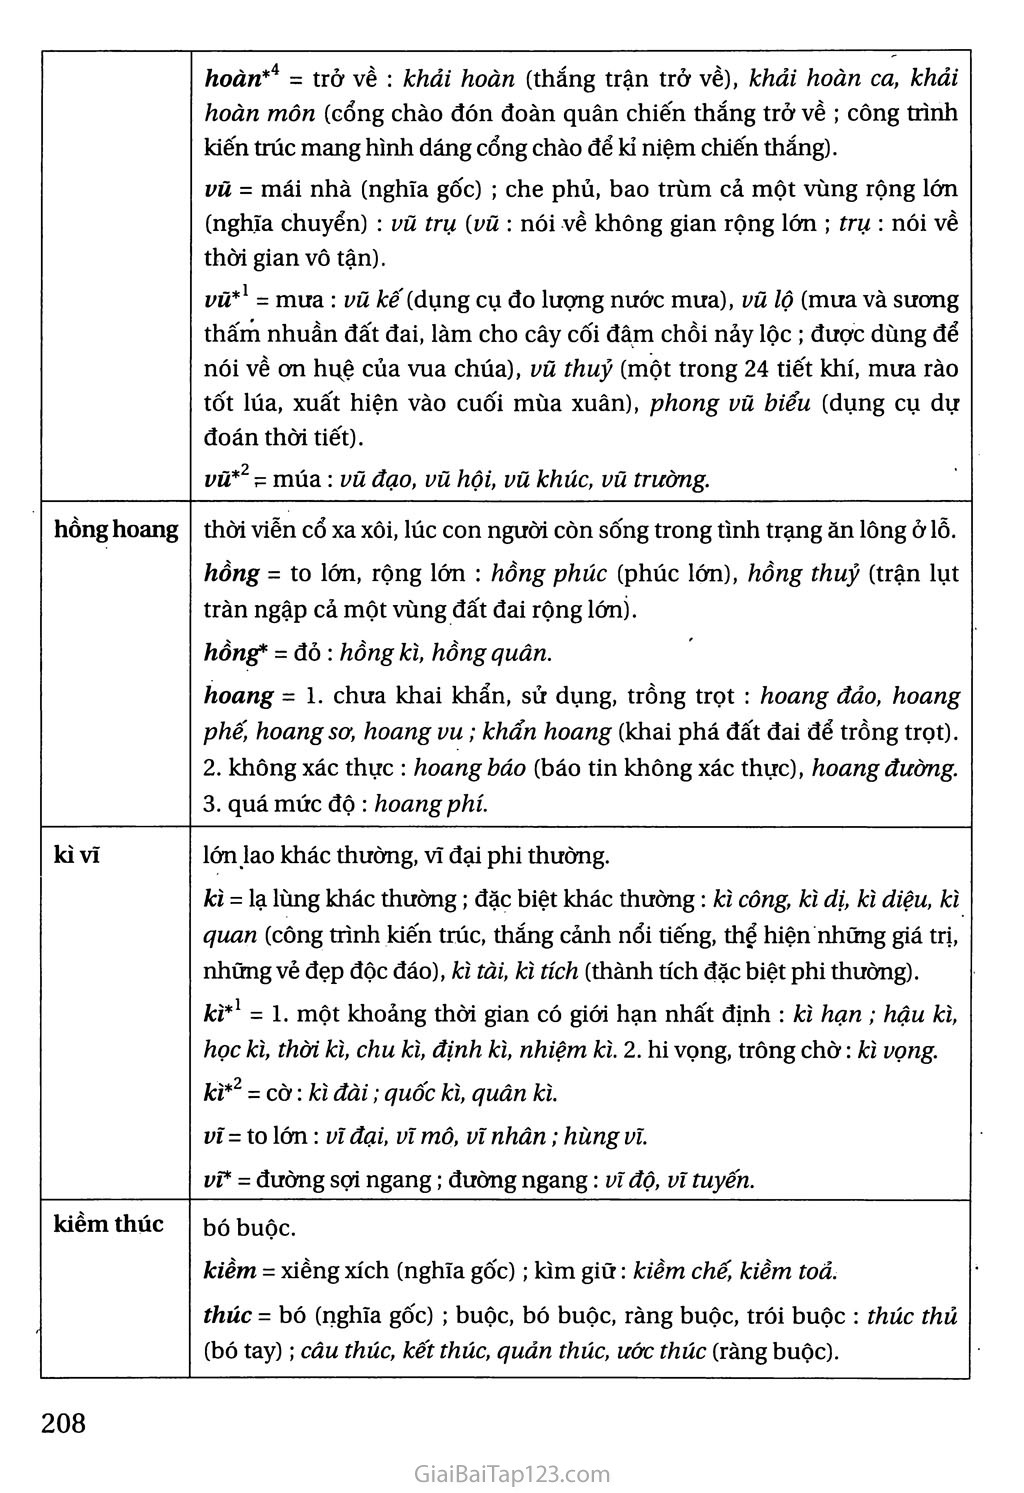 Bảng tra cứu từ Hán Việt trang 3